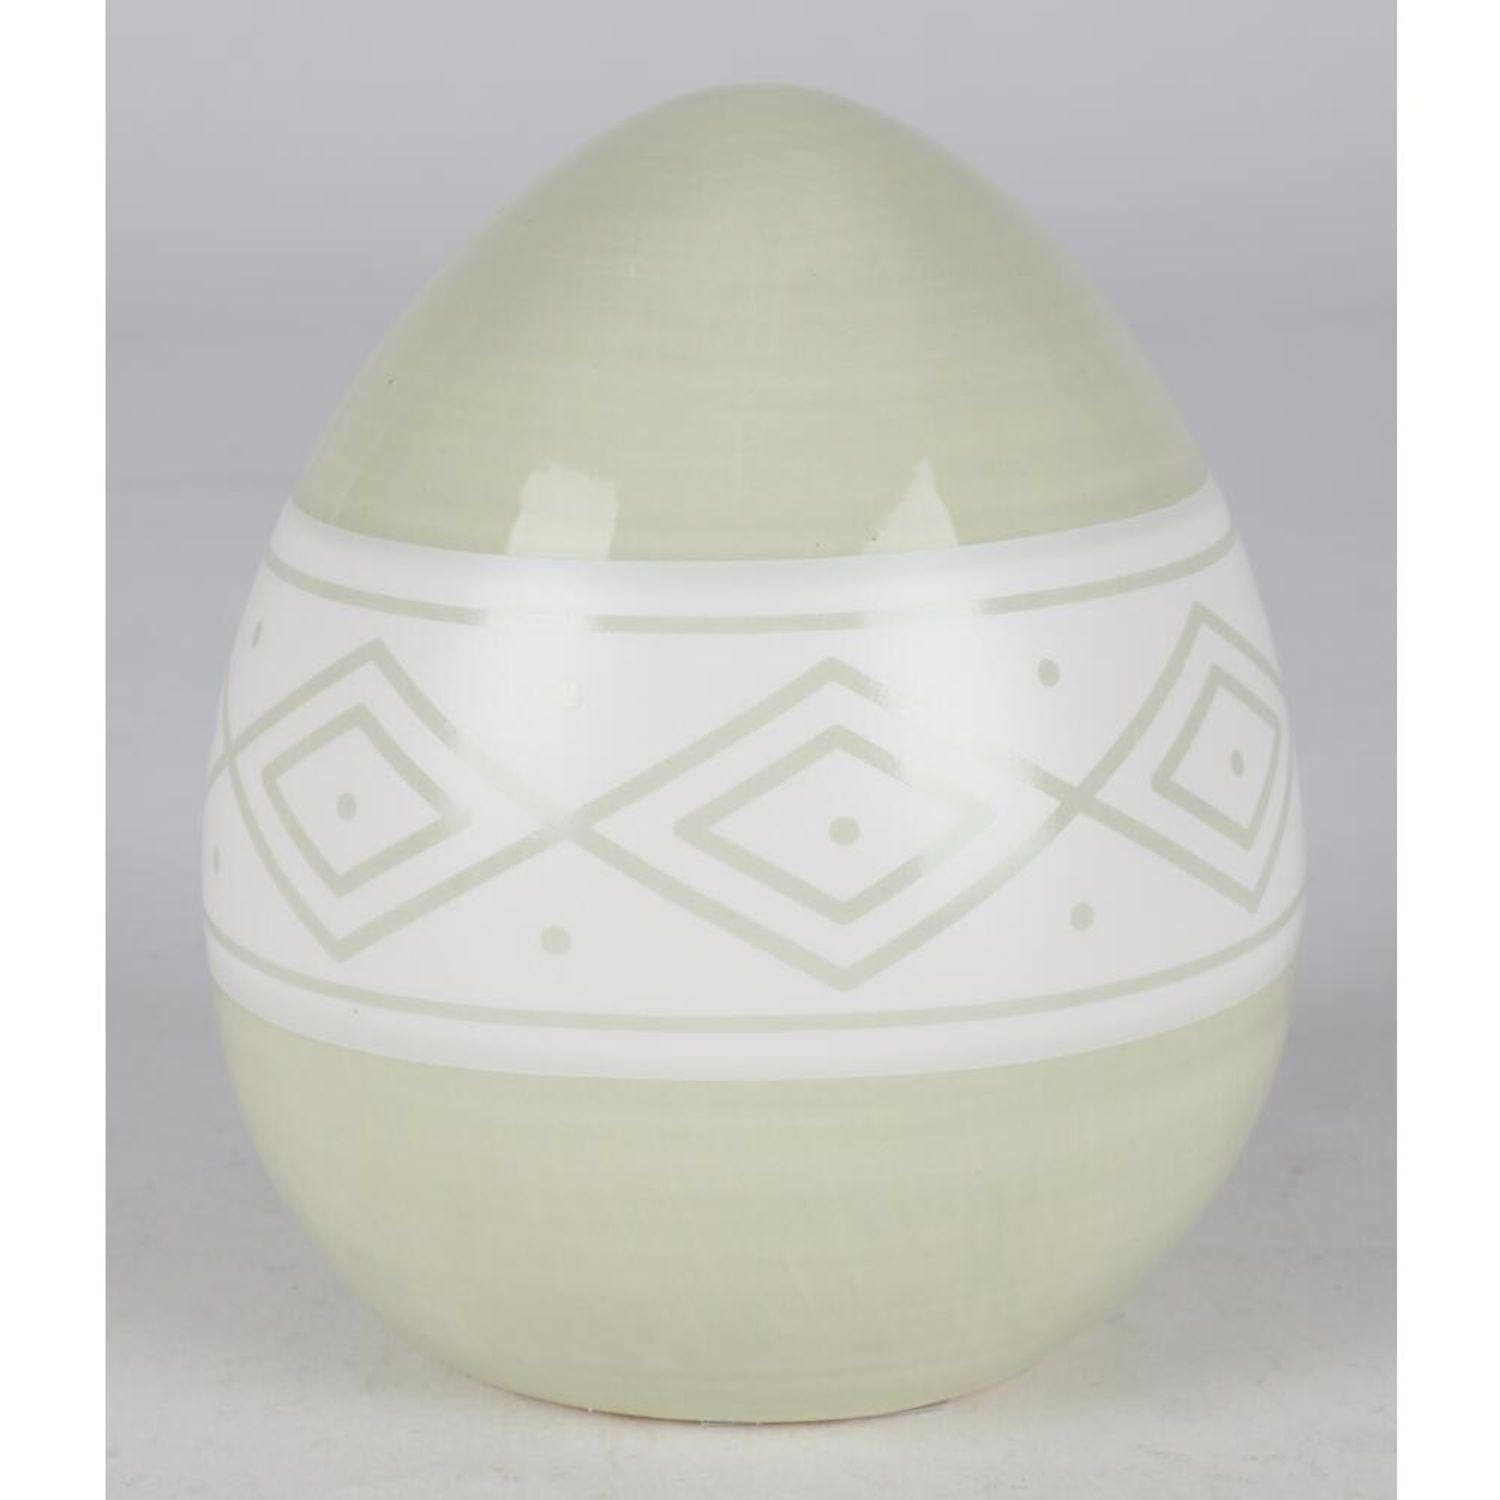 Haushalt Dekofigur BURI wo Dekoration verschiedene Keramik-Ostereier Farben 9x Ostern